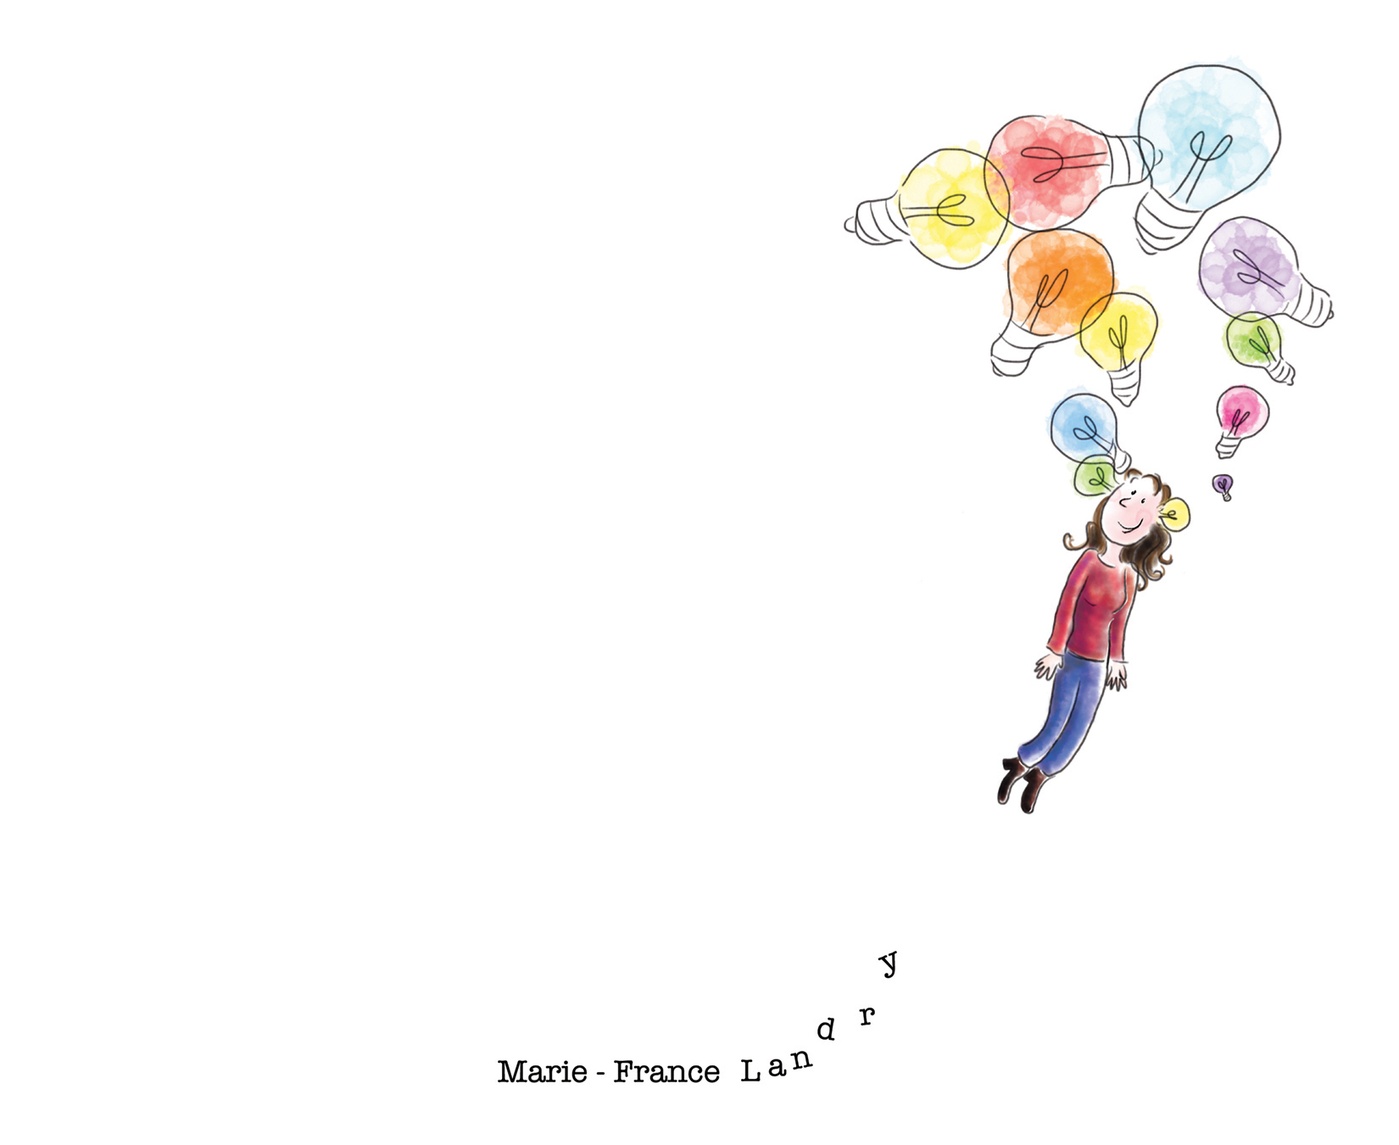 Marie-France Landry - Des idées plein la tête  •  Uplifting ideas